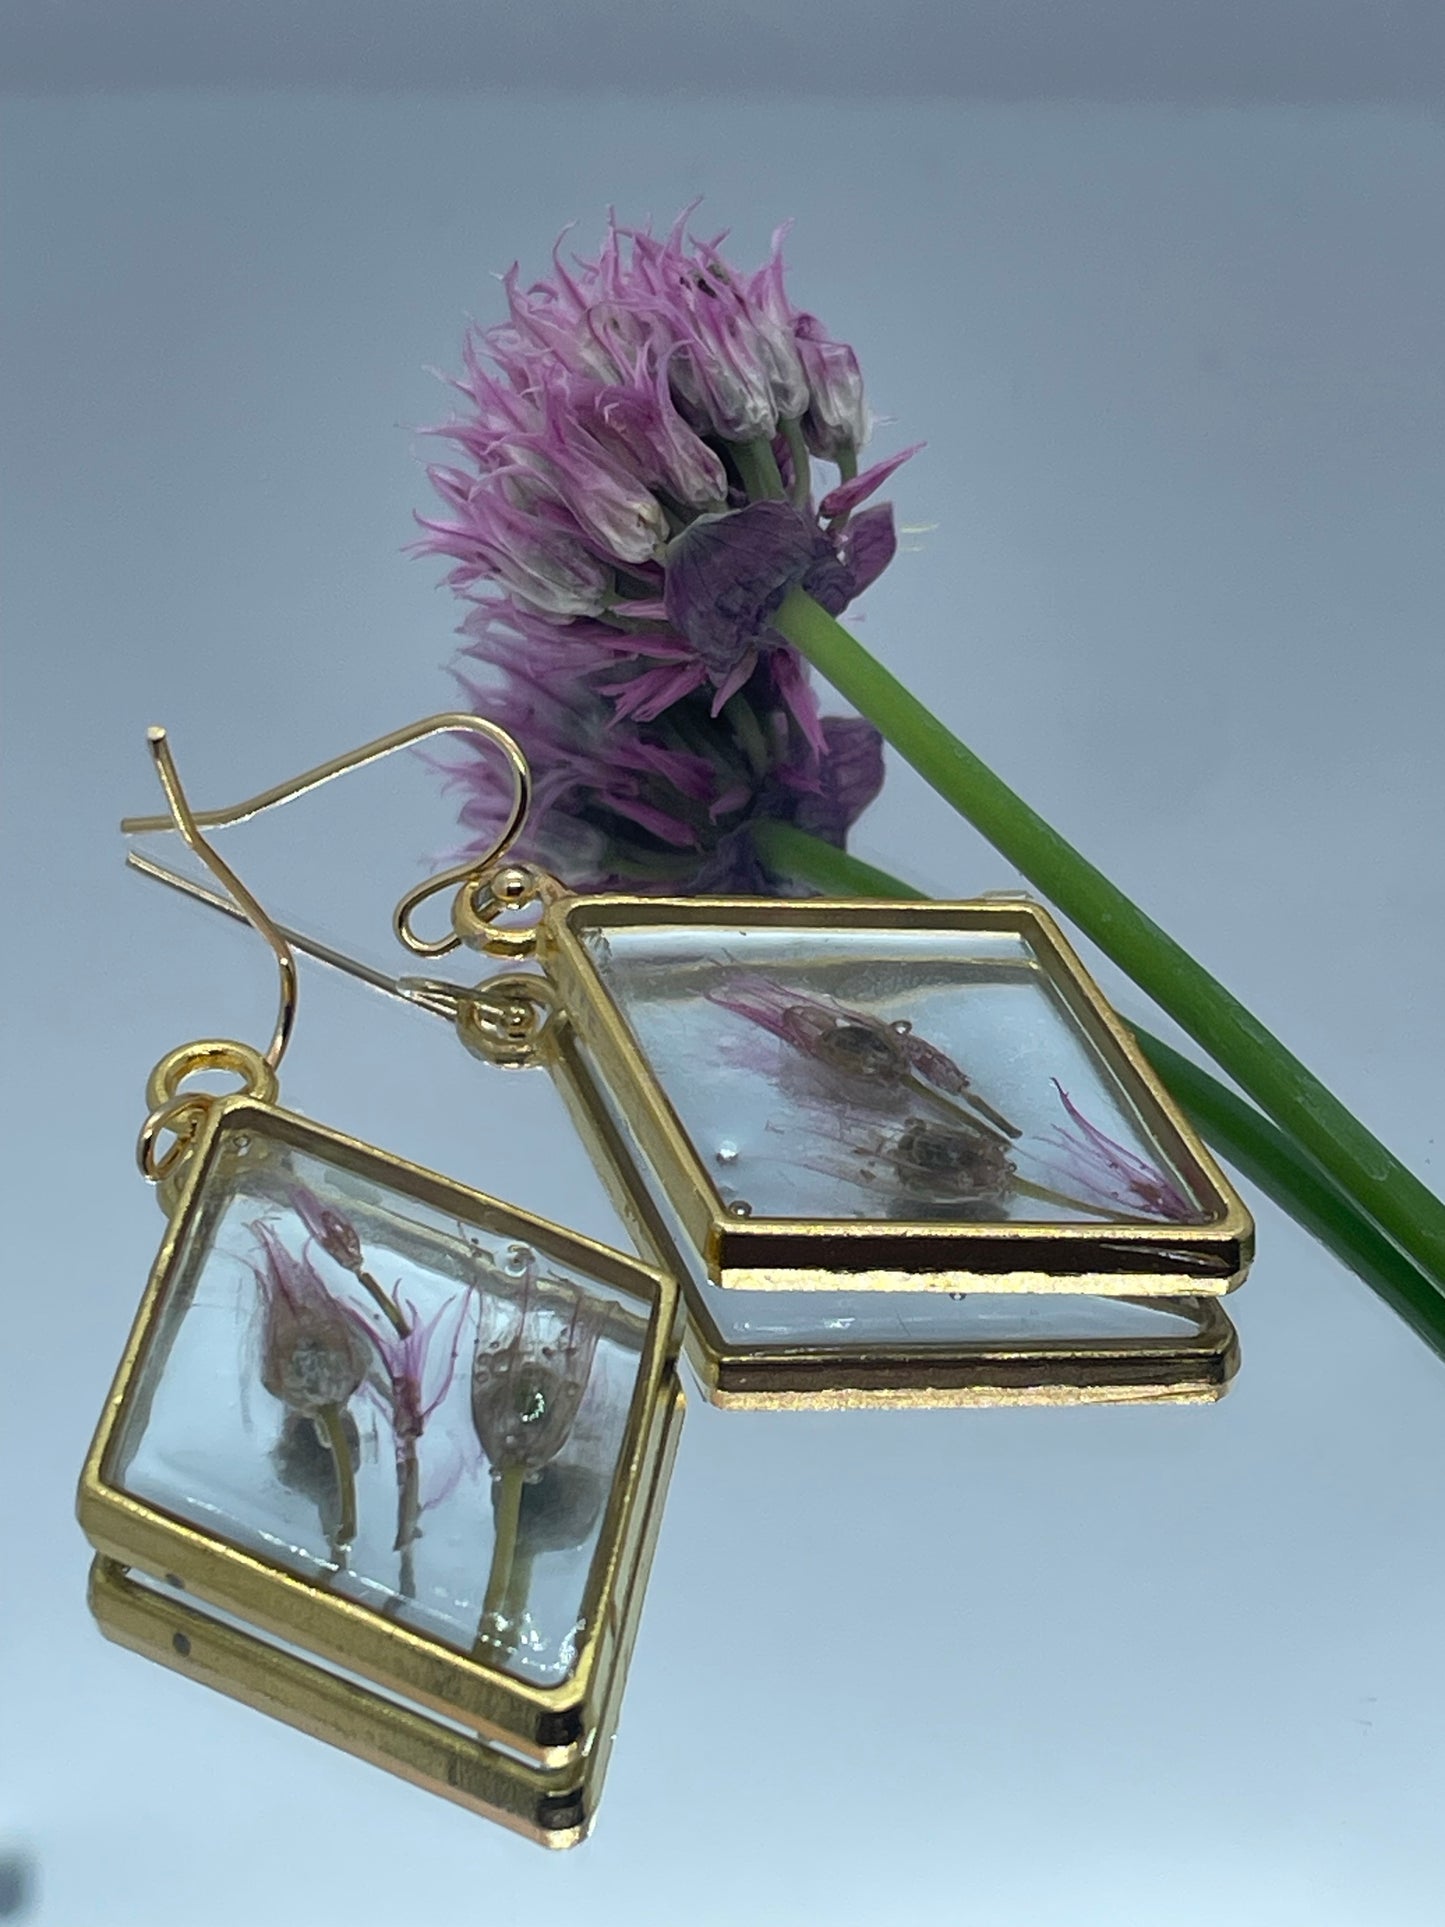 Chives & resin diamond earrings